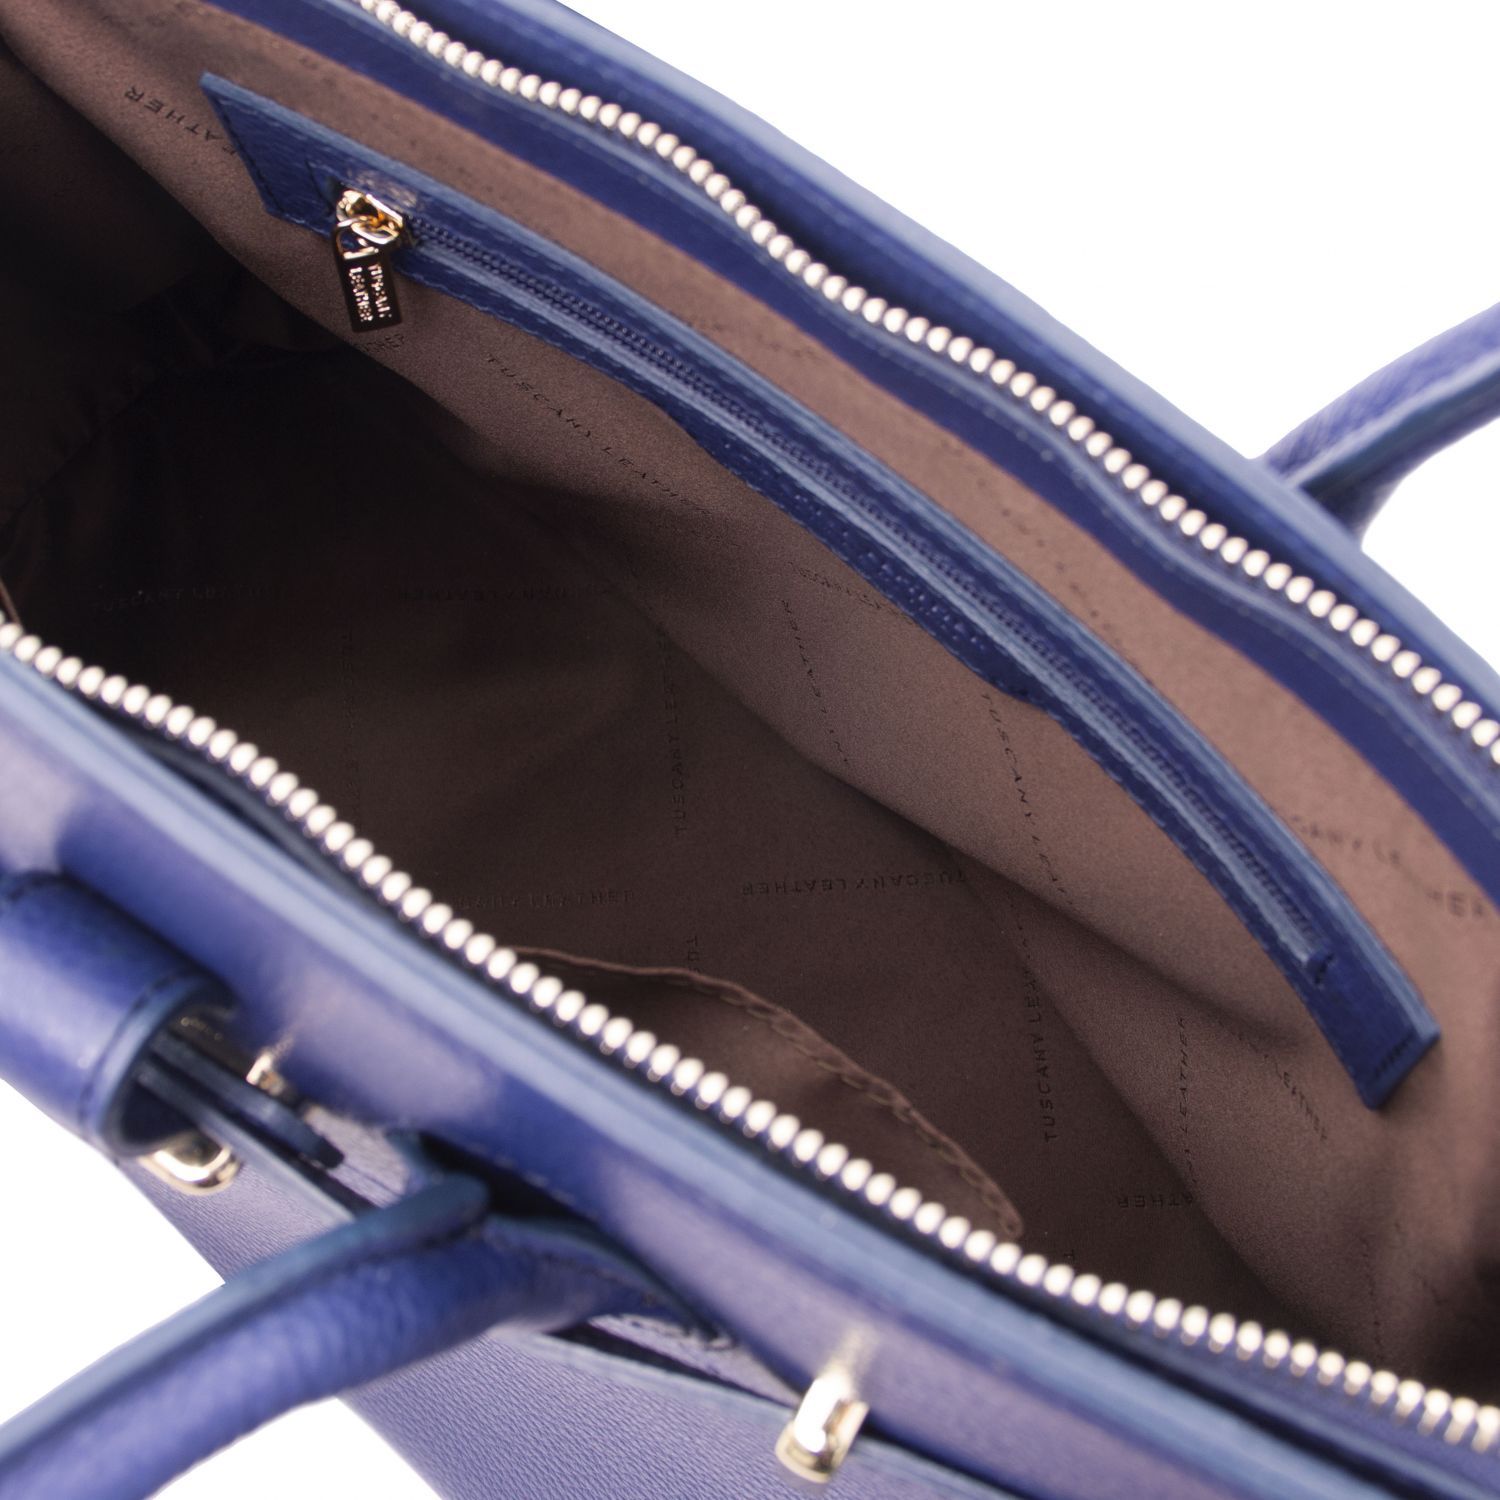 TL Bag - Sac à main pour femme avec finitions couleur or - Bleu foncé (TL141529)